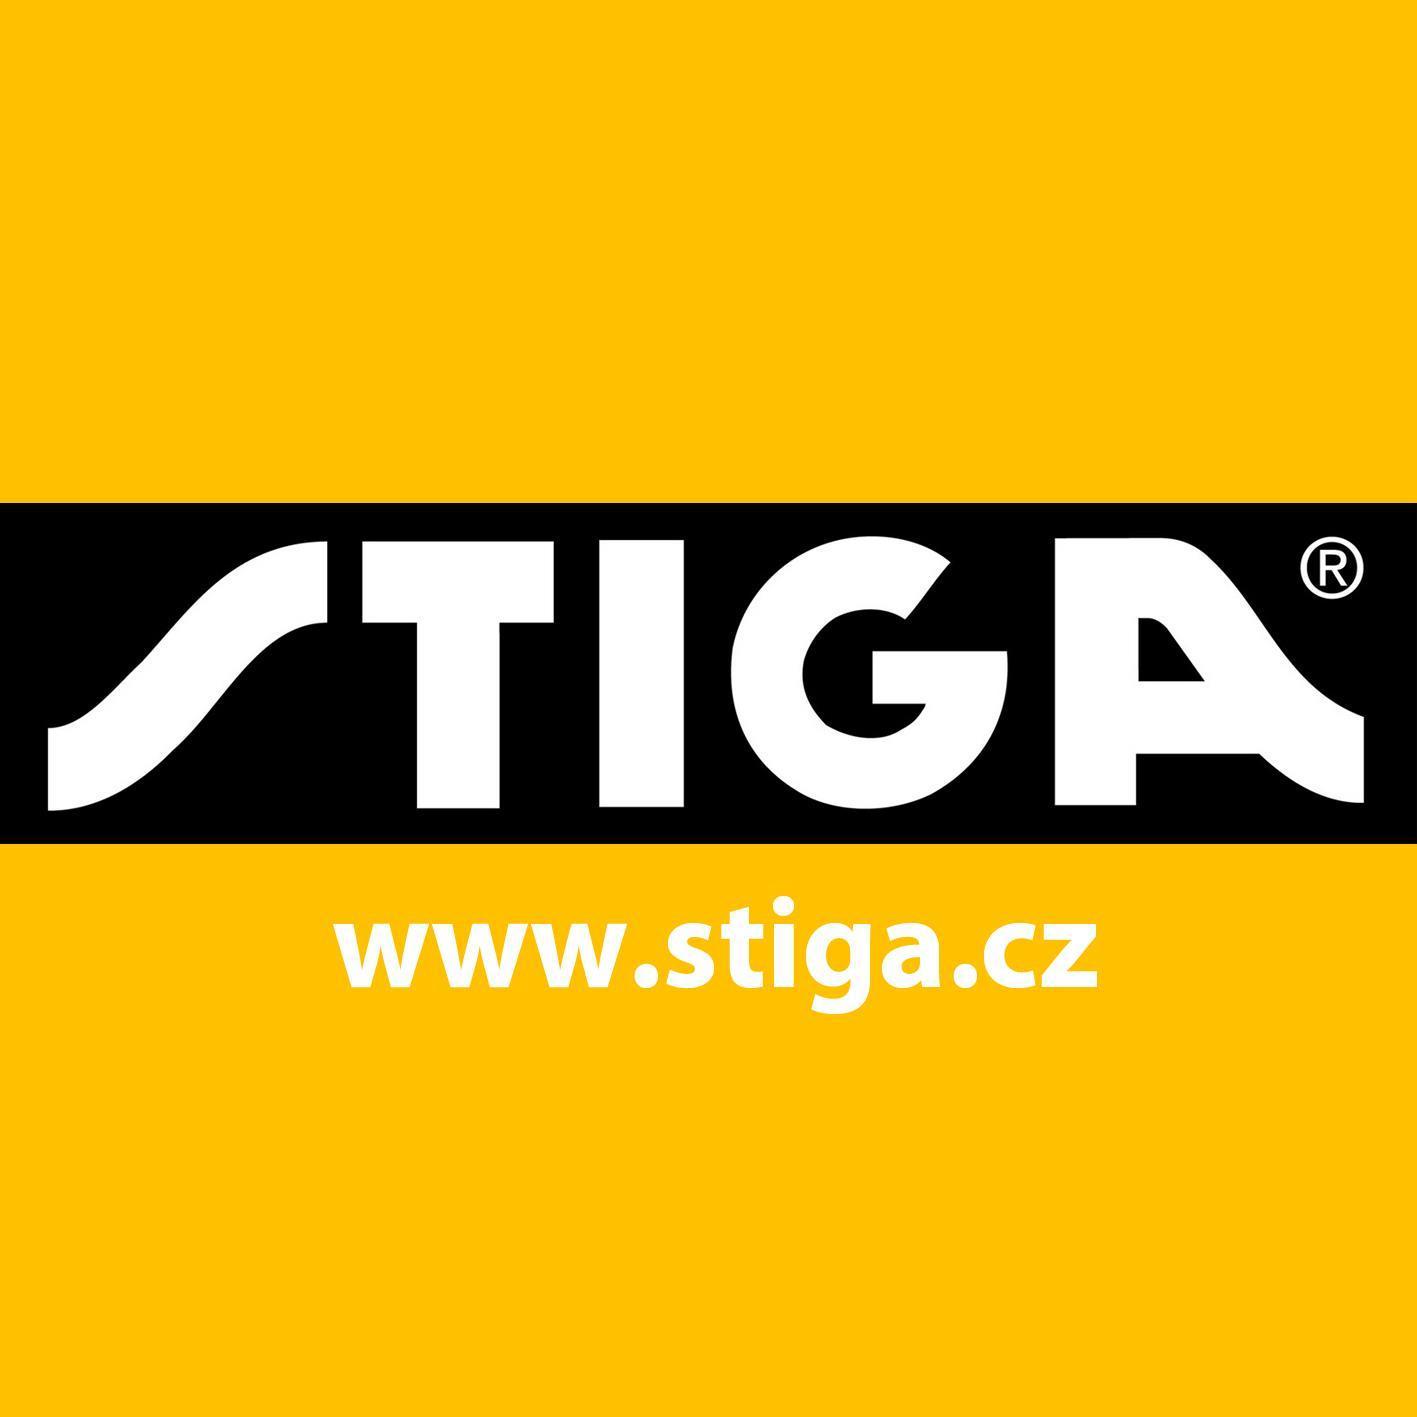 Jsme výrobcem a distributorem zahradní techniky Stiga v ČR.
Na našem webu najdete kompletní sortiment této značky.